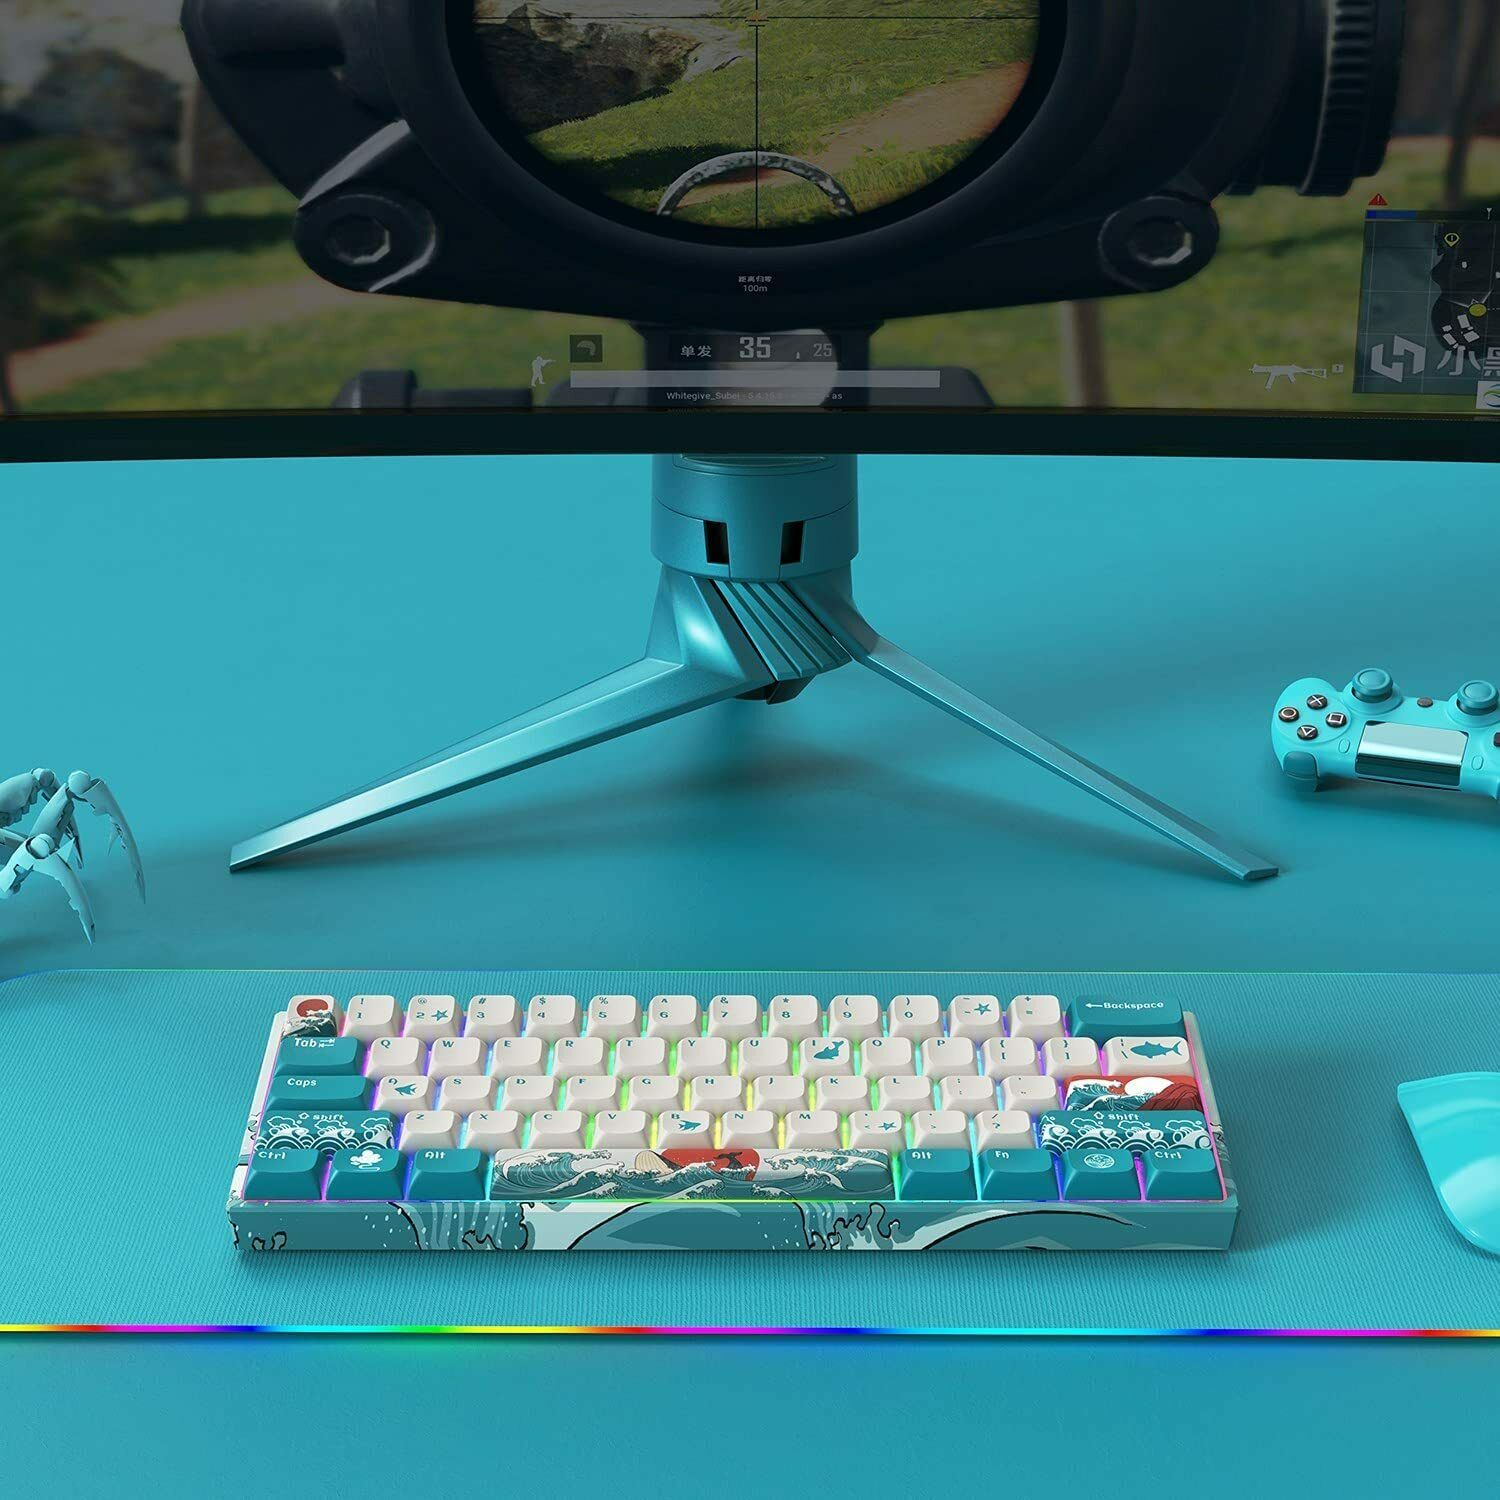 ピンク・ブルー HITIME XVX M61 60% Mechanical Keyboard Wireless, Ultra-Compact 2.4G  Rechargeable Gaming Keyboard, RGB Backlit Ergonomic Keyboard for Windows  Mac PC Ga